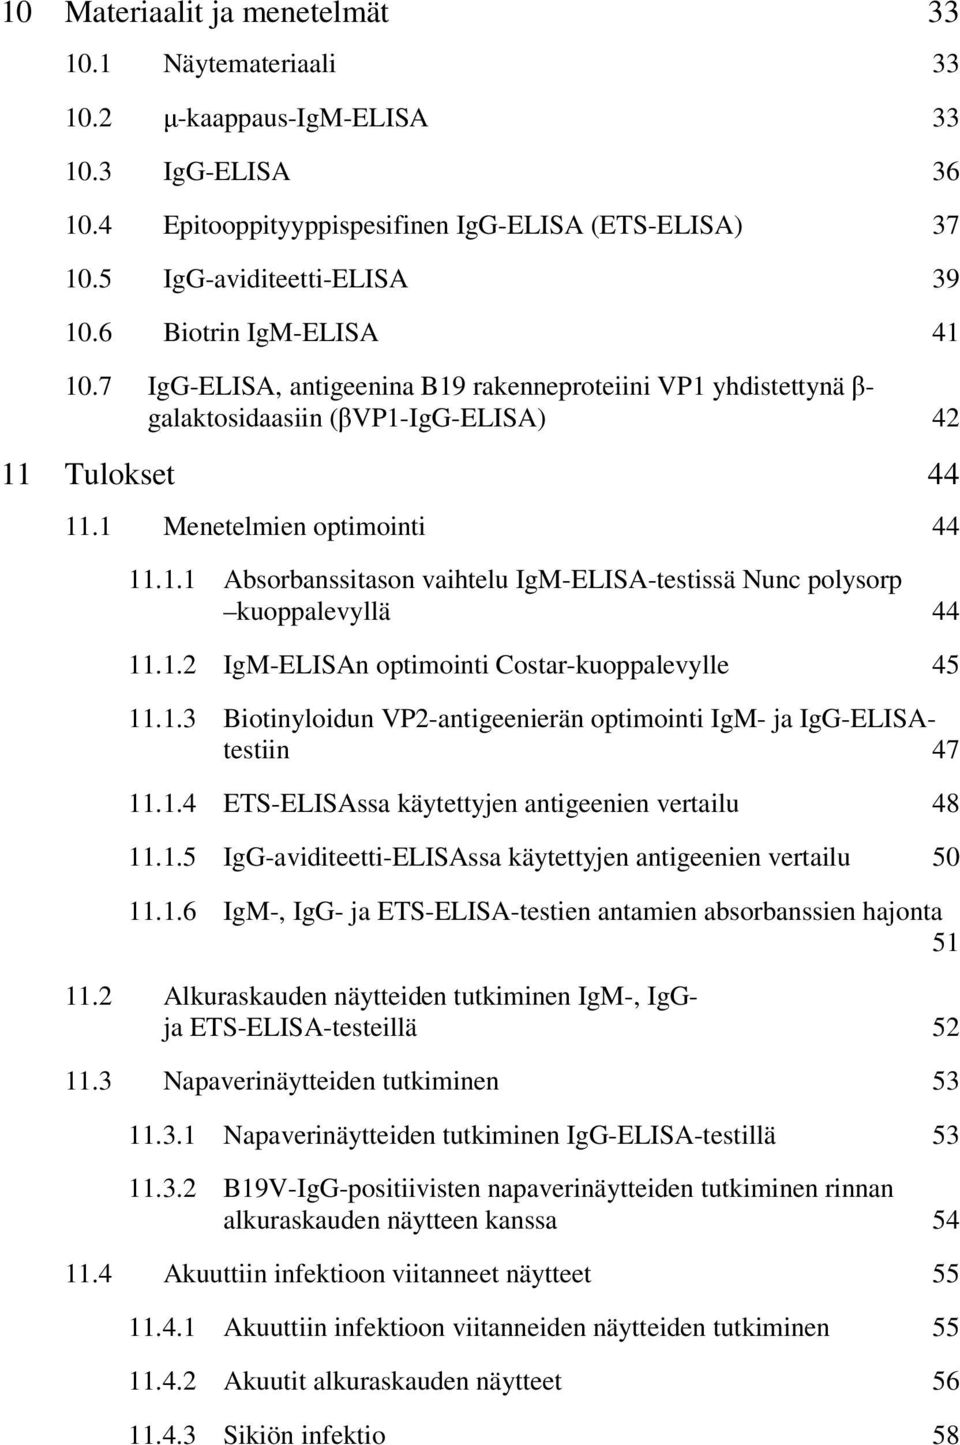 1.2 IgM-ELISAn optimointi Costar-kuoppalevylle 45 11.1.3 Biotinyloidun VP2-antigeenierän optimointi IgM- ja IgG-ELISAtestiin 47 11.1.4 ETS-ELISAssa käytettyjen antigeenien vertailu 48 11.1.5 IgG-aviditeetti-ELISAssa käytettyjen antigeenien vertailu 50 11.